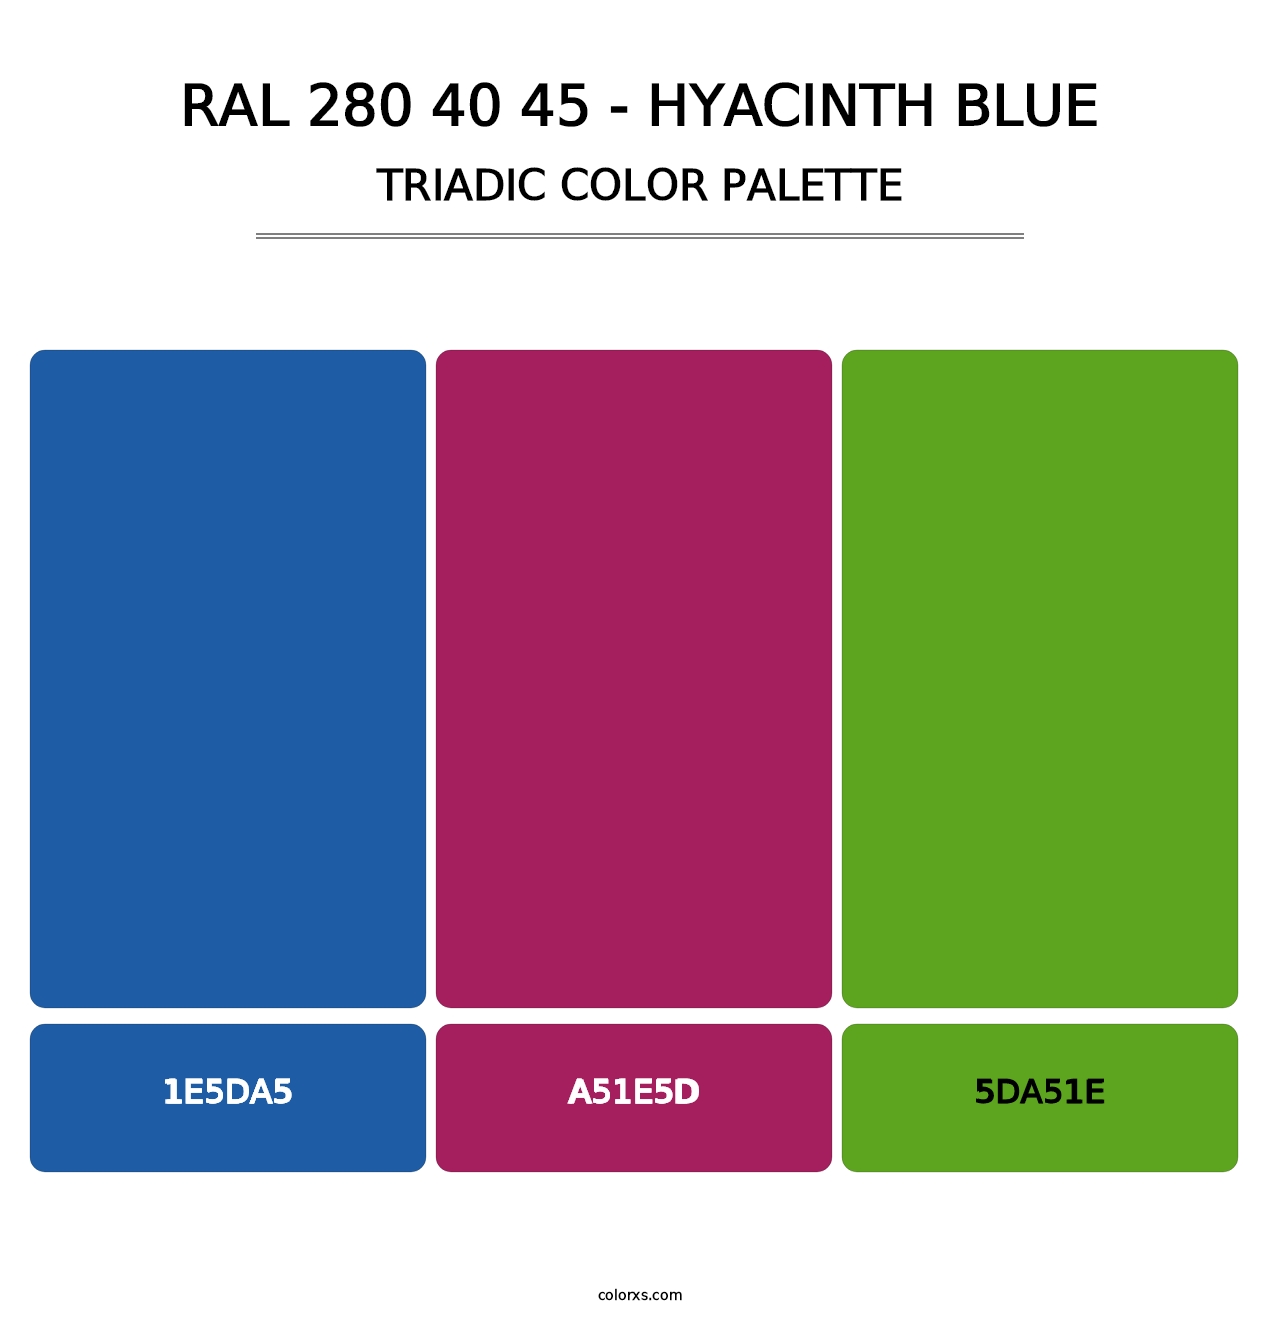 RAL 280 40 45 - Hyacinth Blue - Triadic Color Palette